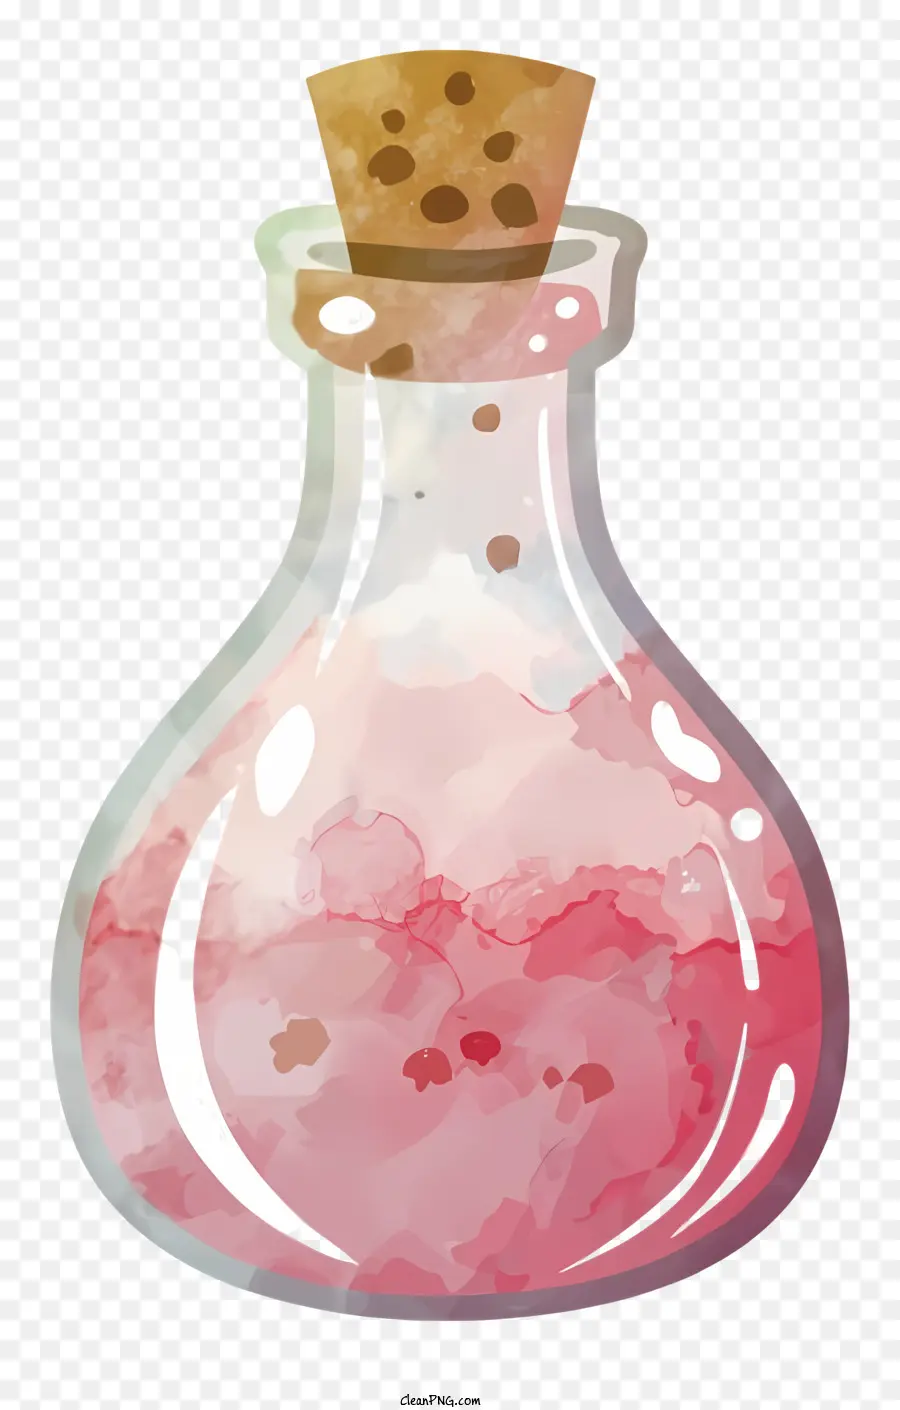 Bánh chai chất lỏng màu hồng của bình hoa màu hồng - Chai thủy tinh trong suốt chứa đầy chất lỏng màu hồng